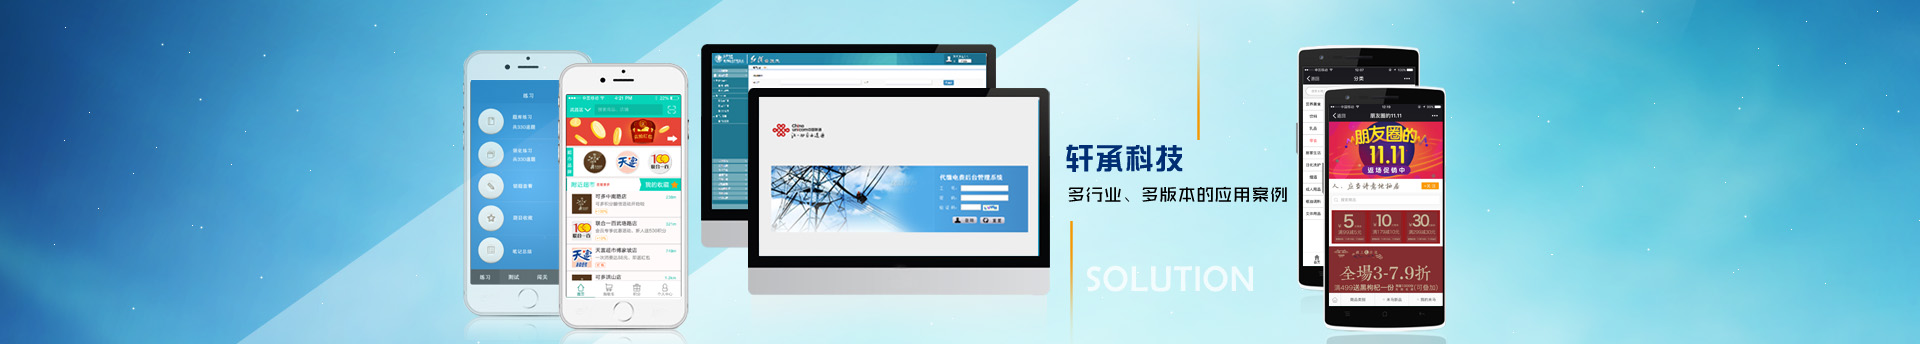 武汉软件开发-武汉网站建设-武汉APP开发-武汉微信小程序开发-武汉数据可视化开发—联系方式